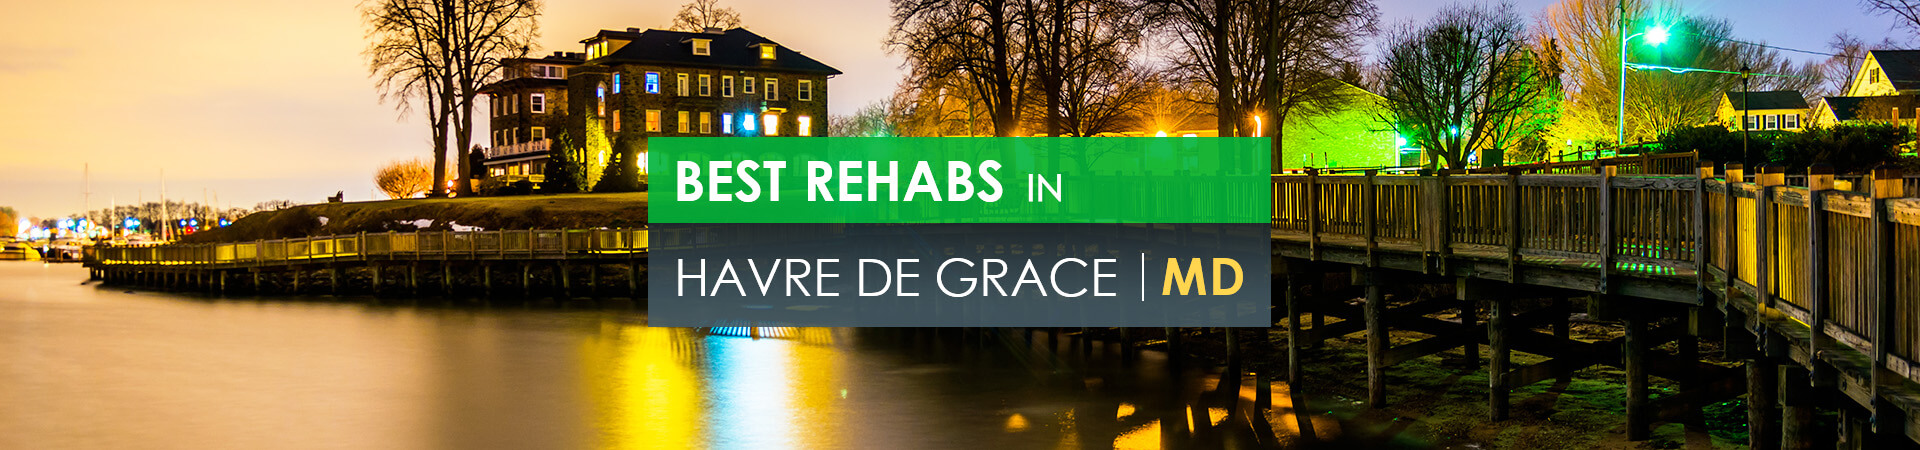 Best rehabs in Havre de Grace, MD